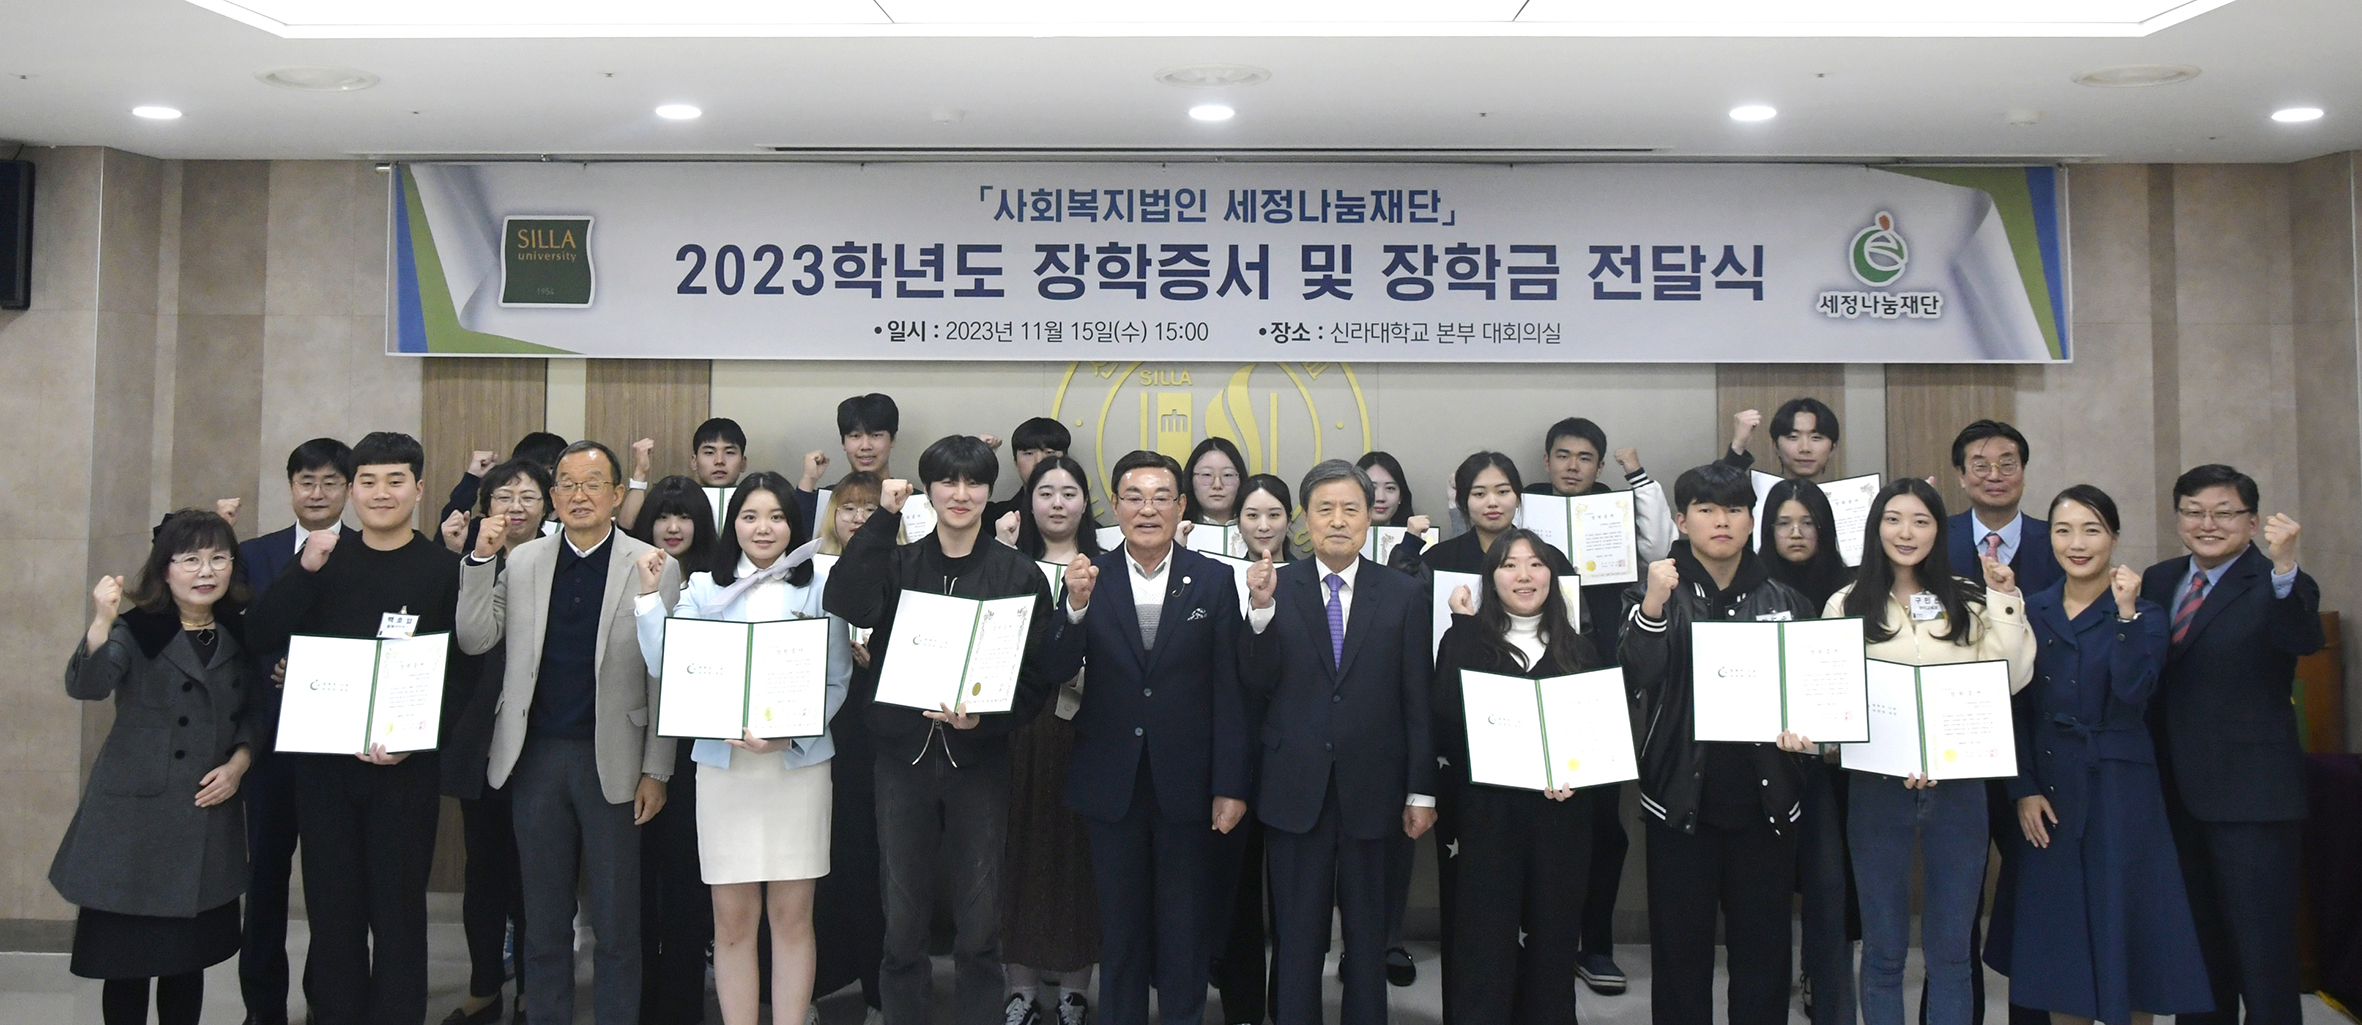 신라대, 2023학년도 세정나눔재단 장학금 수여식 개최 첨부파일  - 1. 세정나눔재단 장학금 수여식 단체사진.JPG